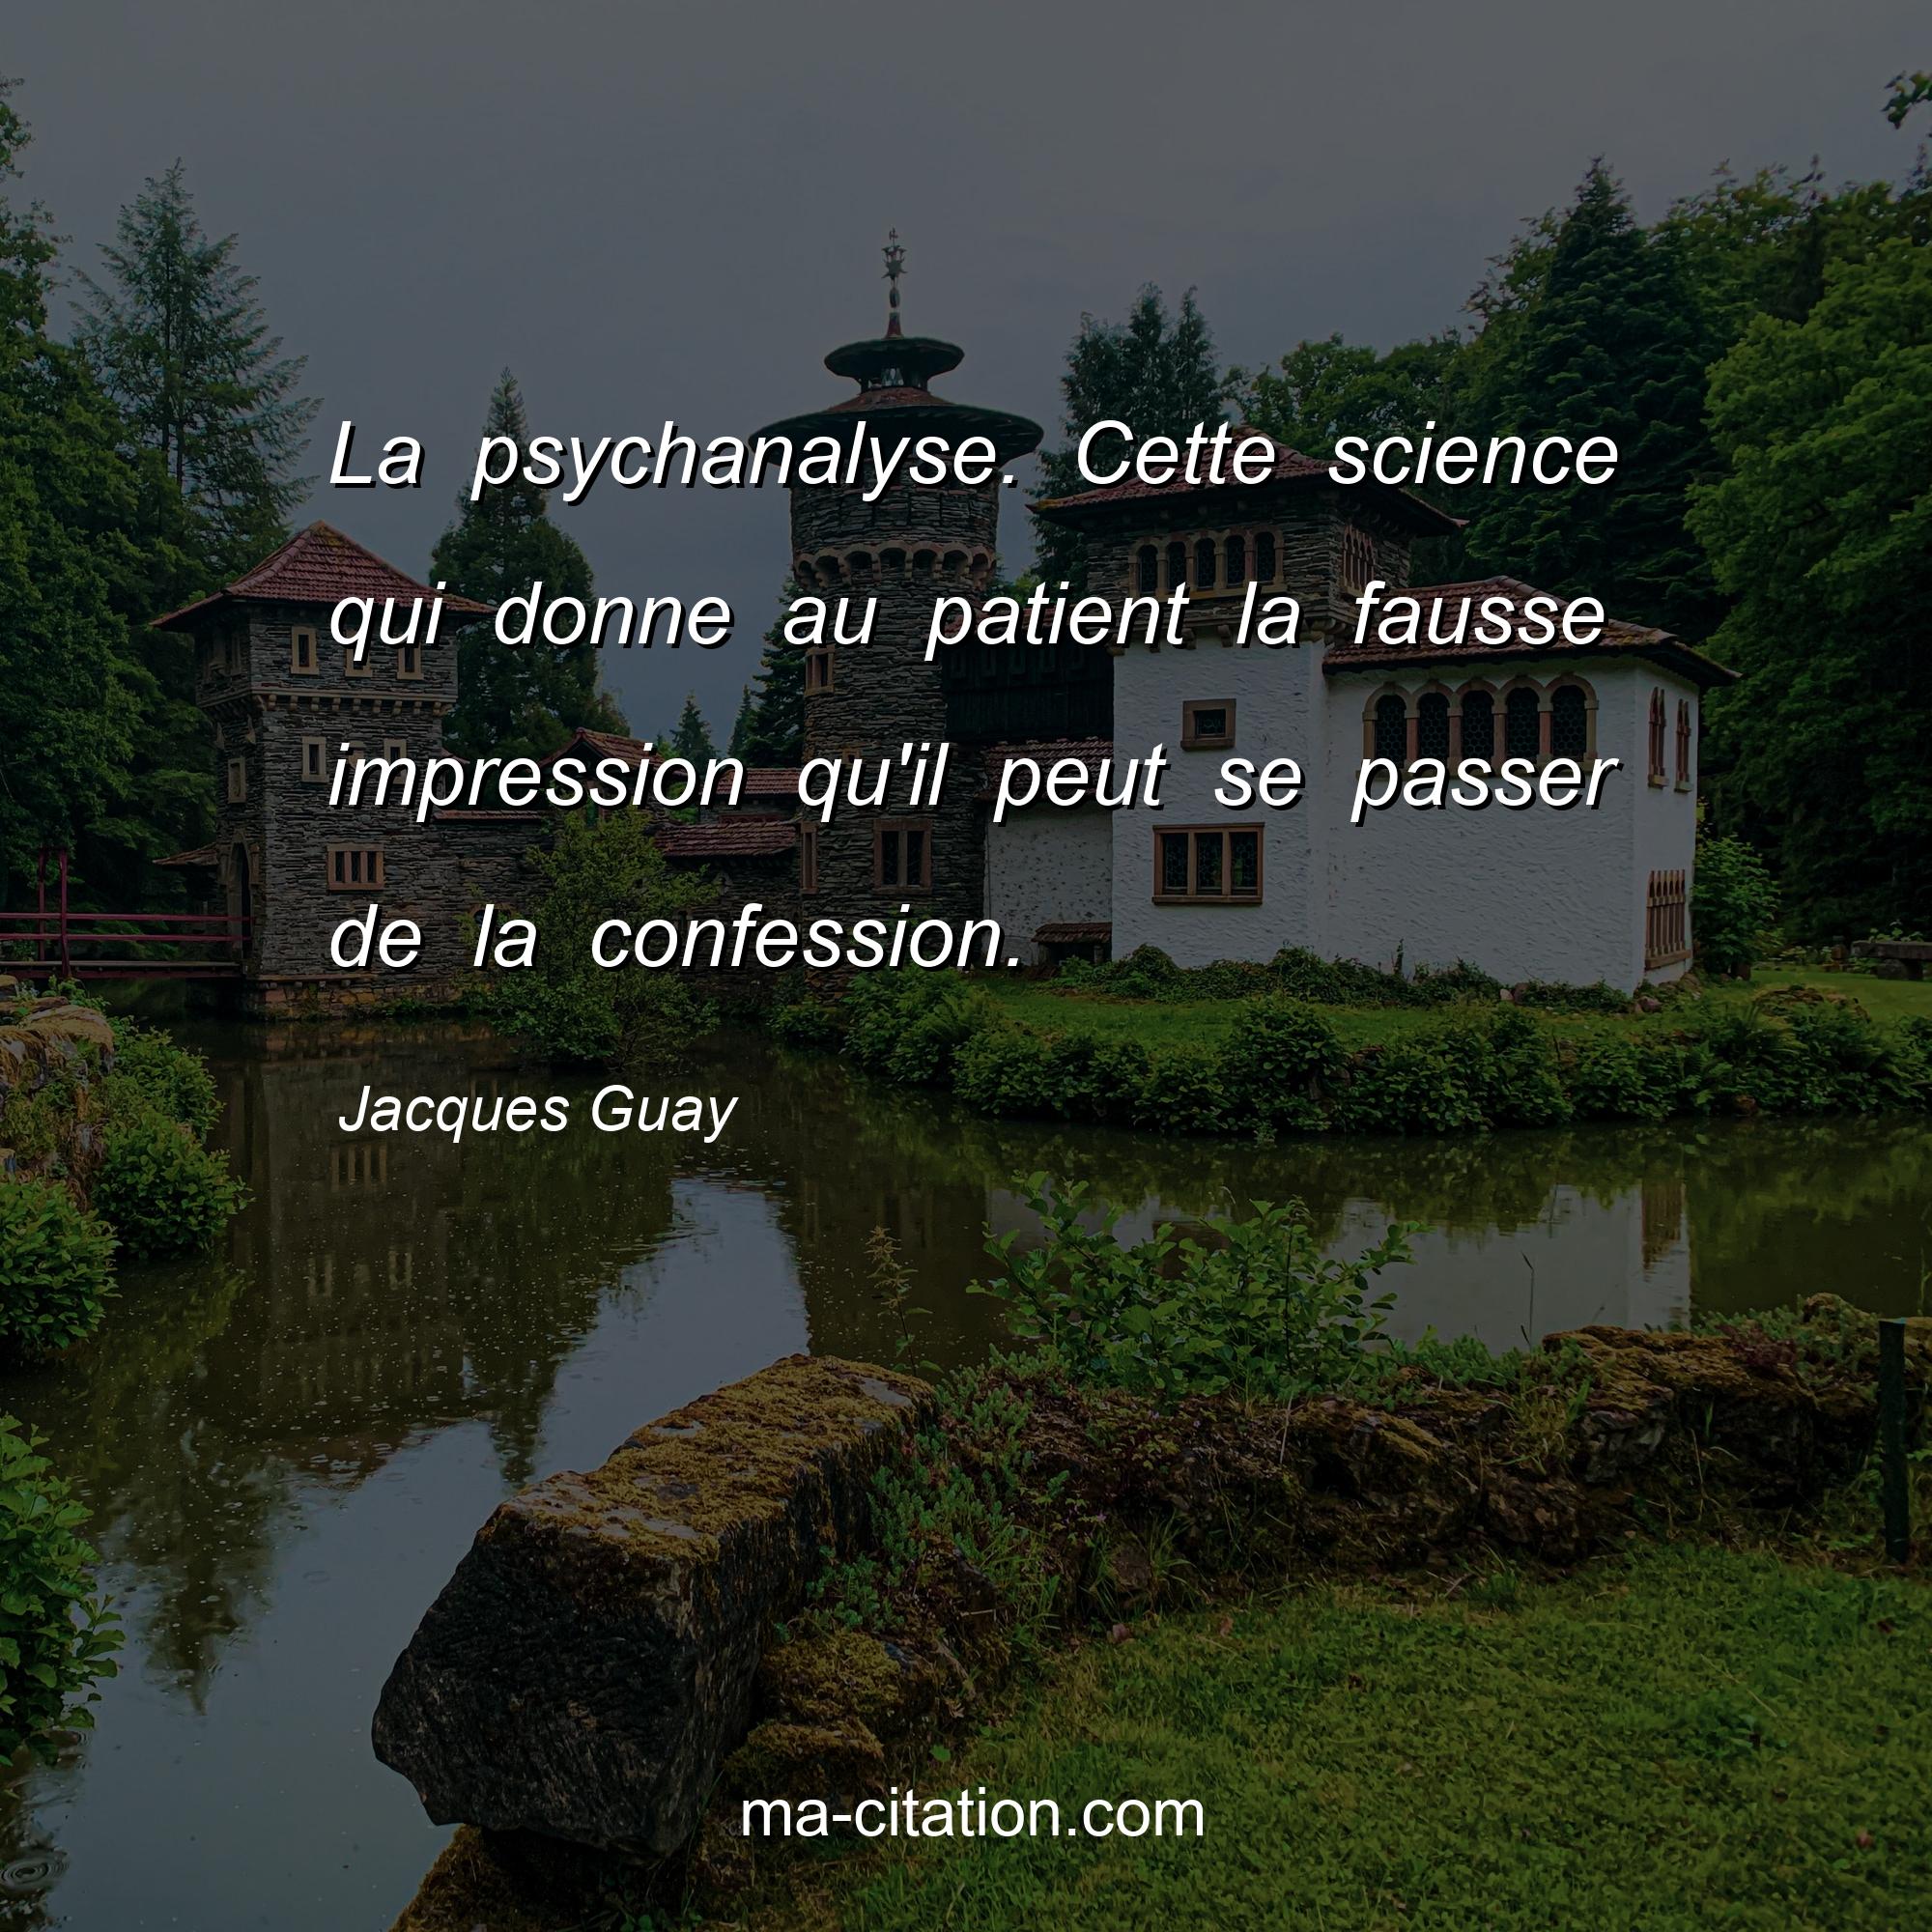 Jacques Guay : La psychanalyse. Cette science qui donne au patient la fausse impression qu'il peut se passer de la confession.